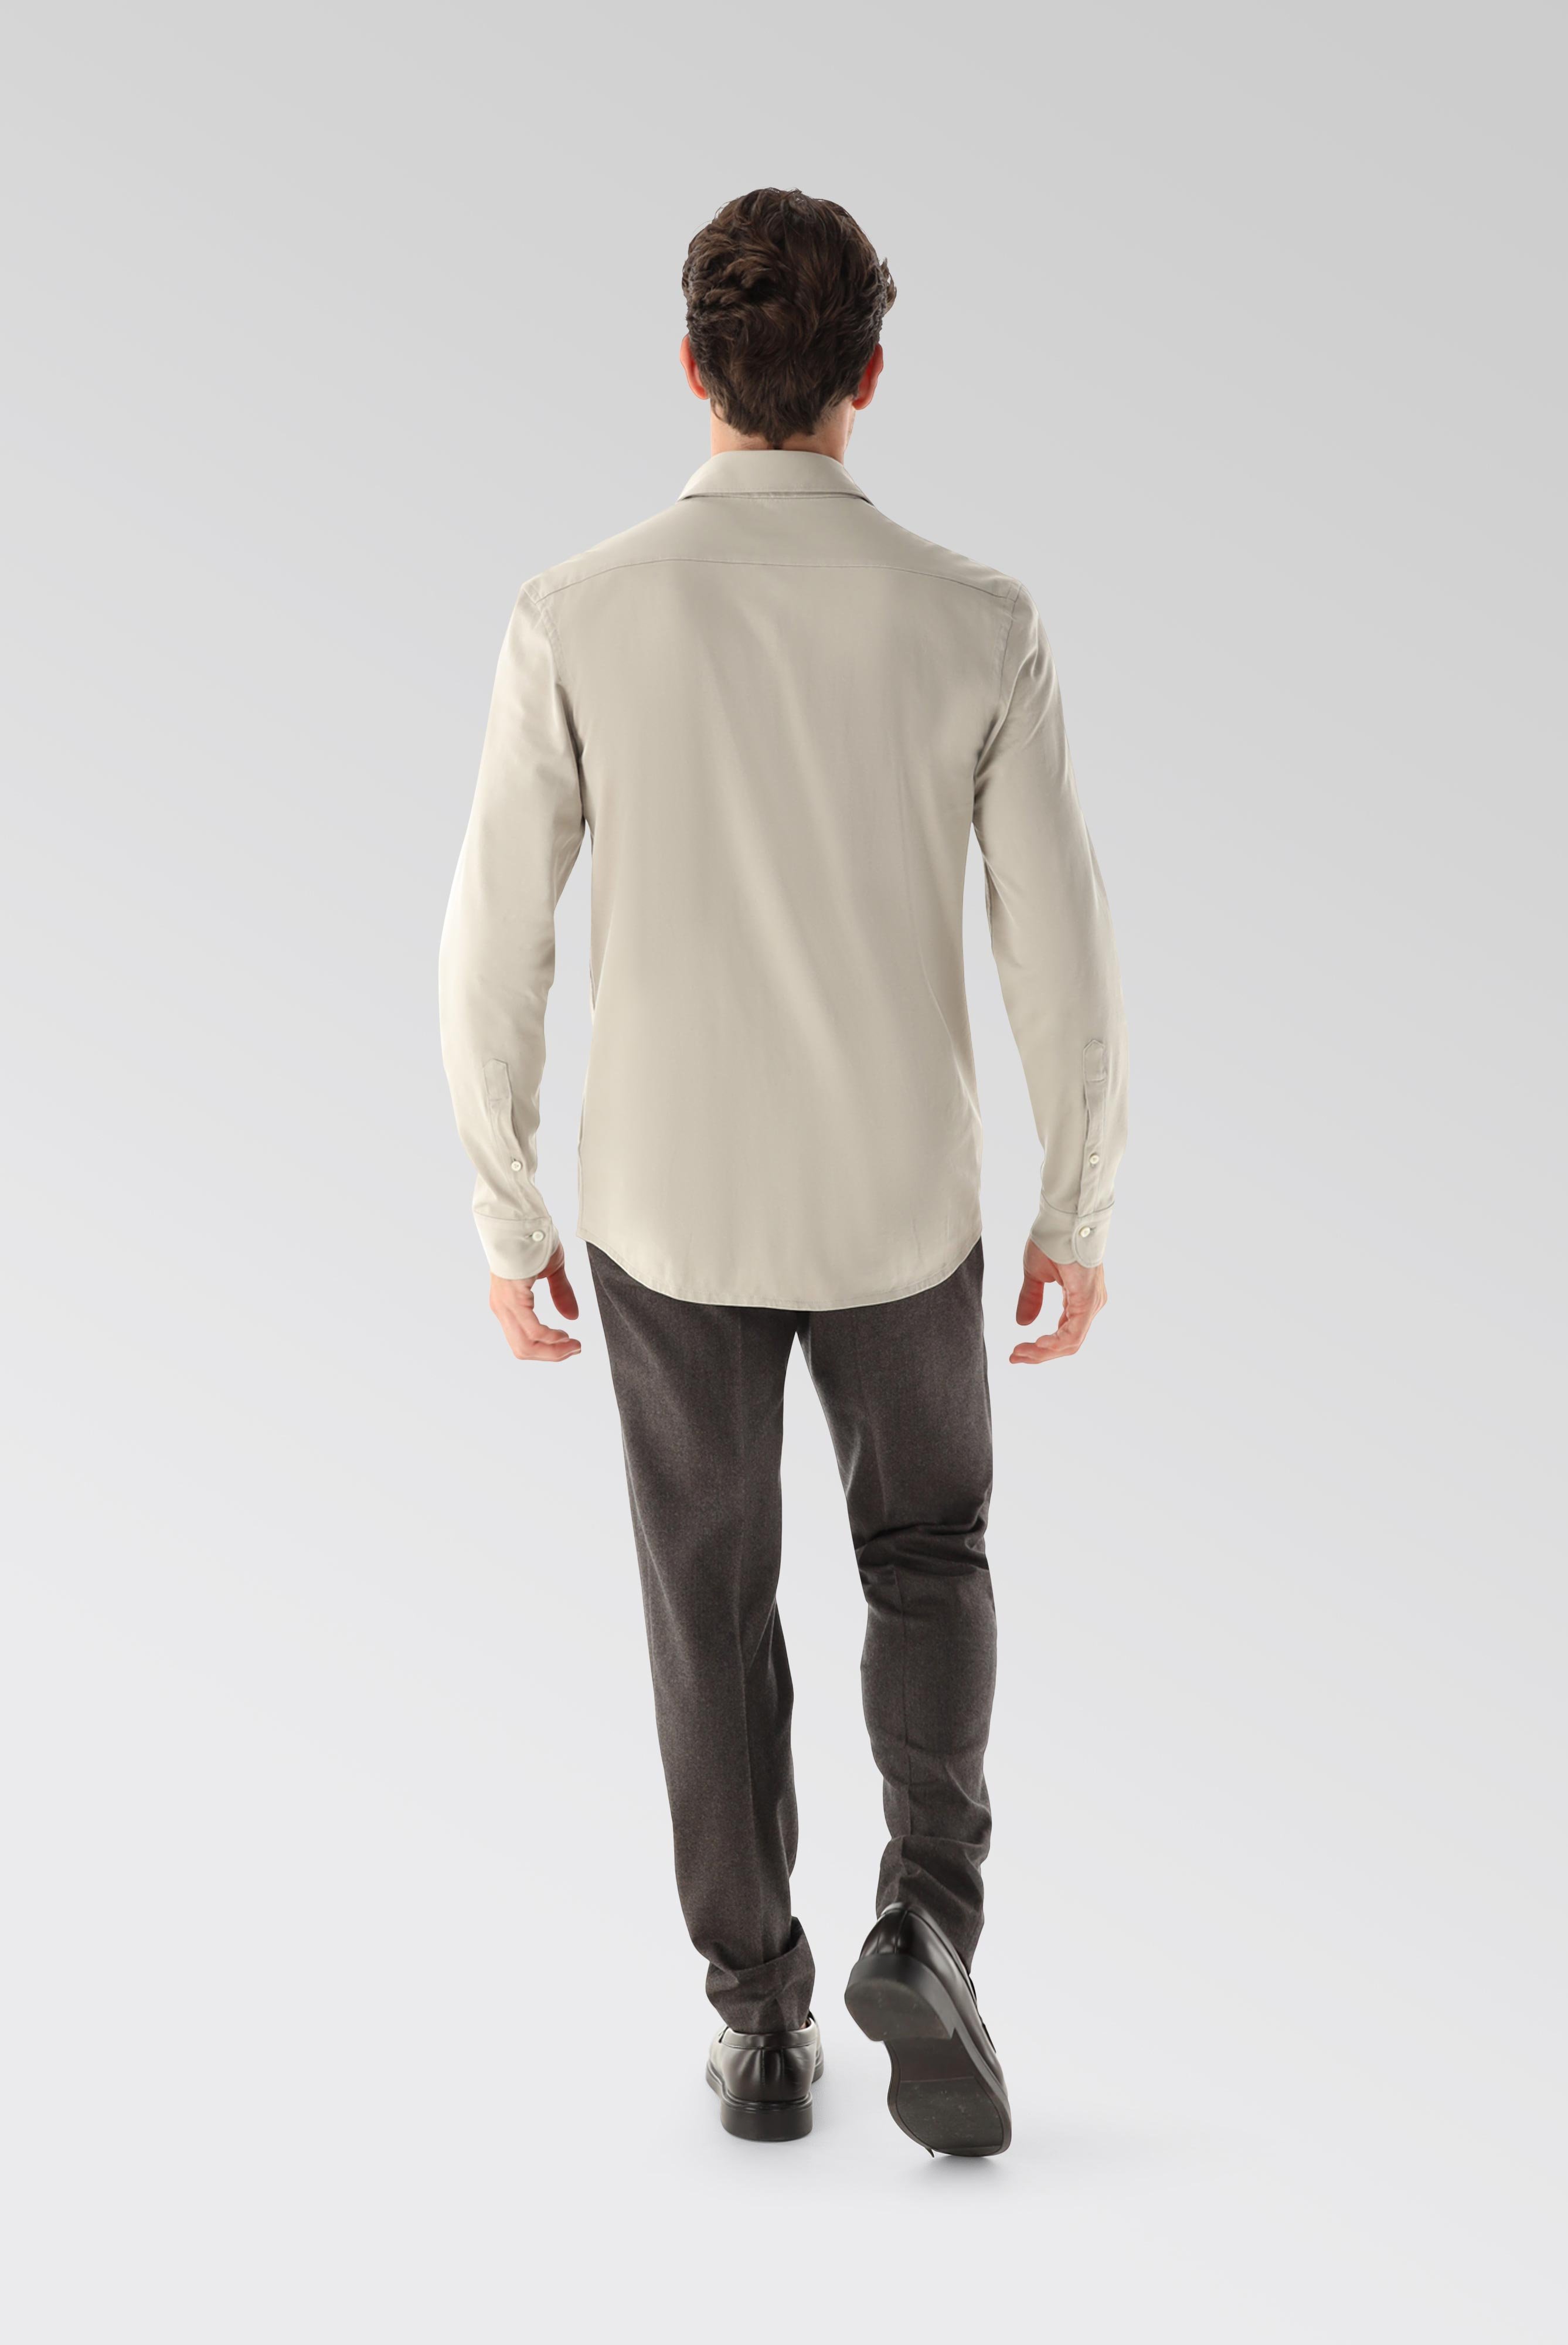 Jersey Hemden+Jersey Shirt Urban Look Slim Fit+20.1651.UC.Z20044.120.S